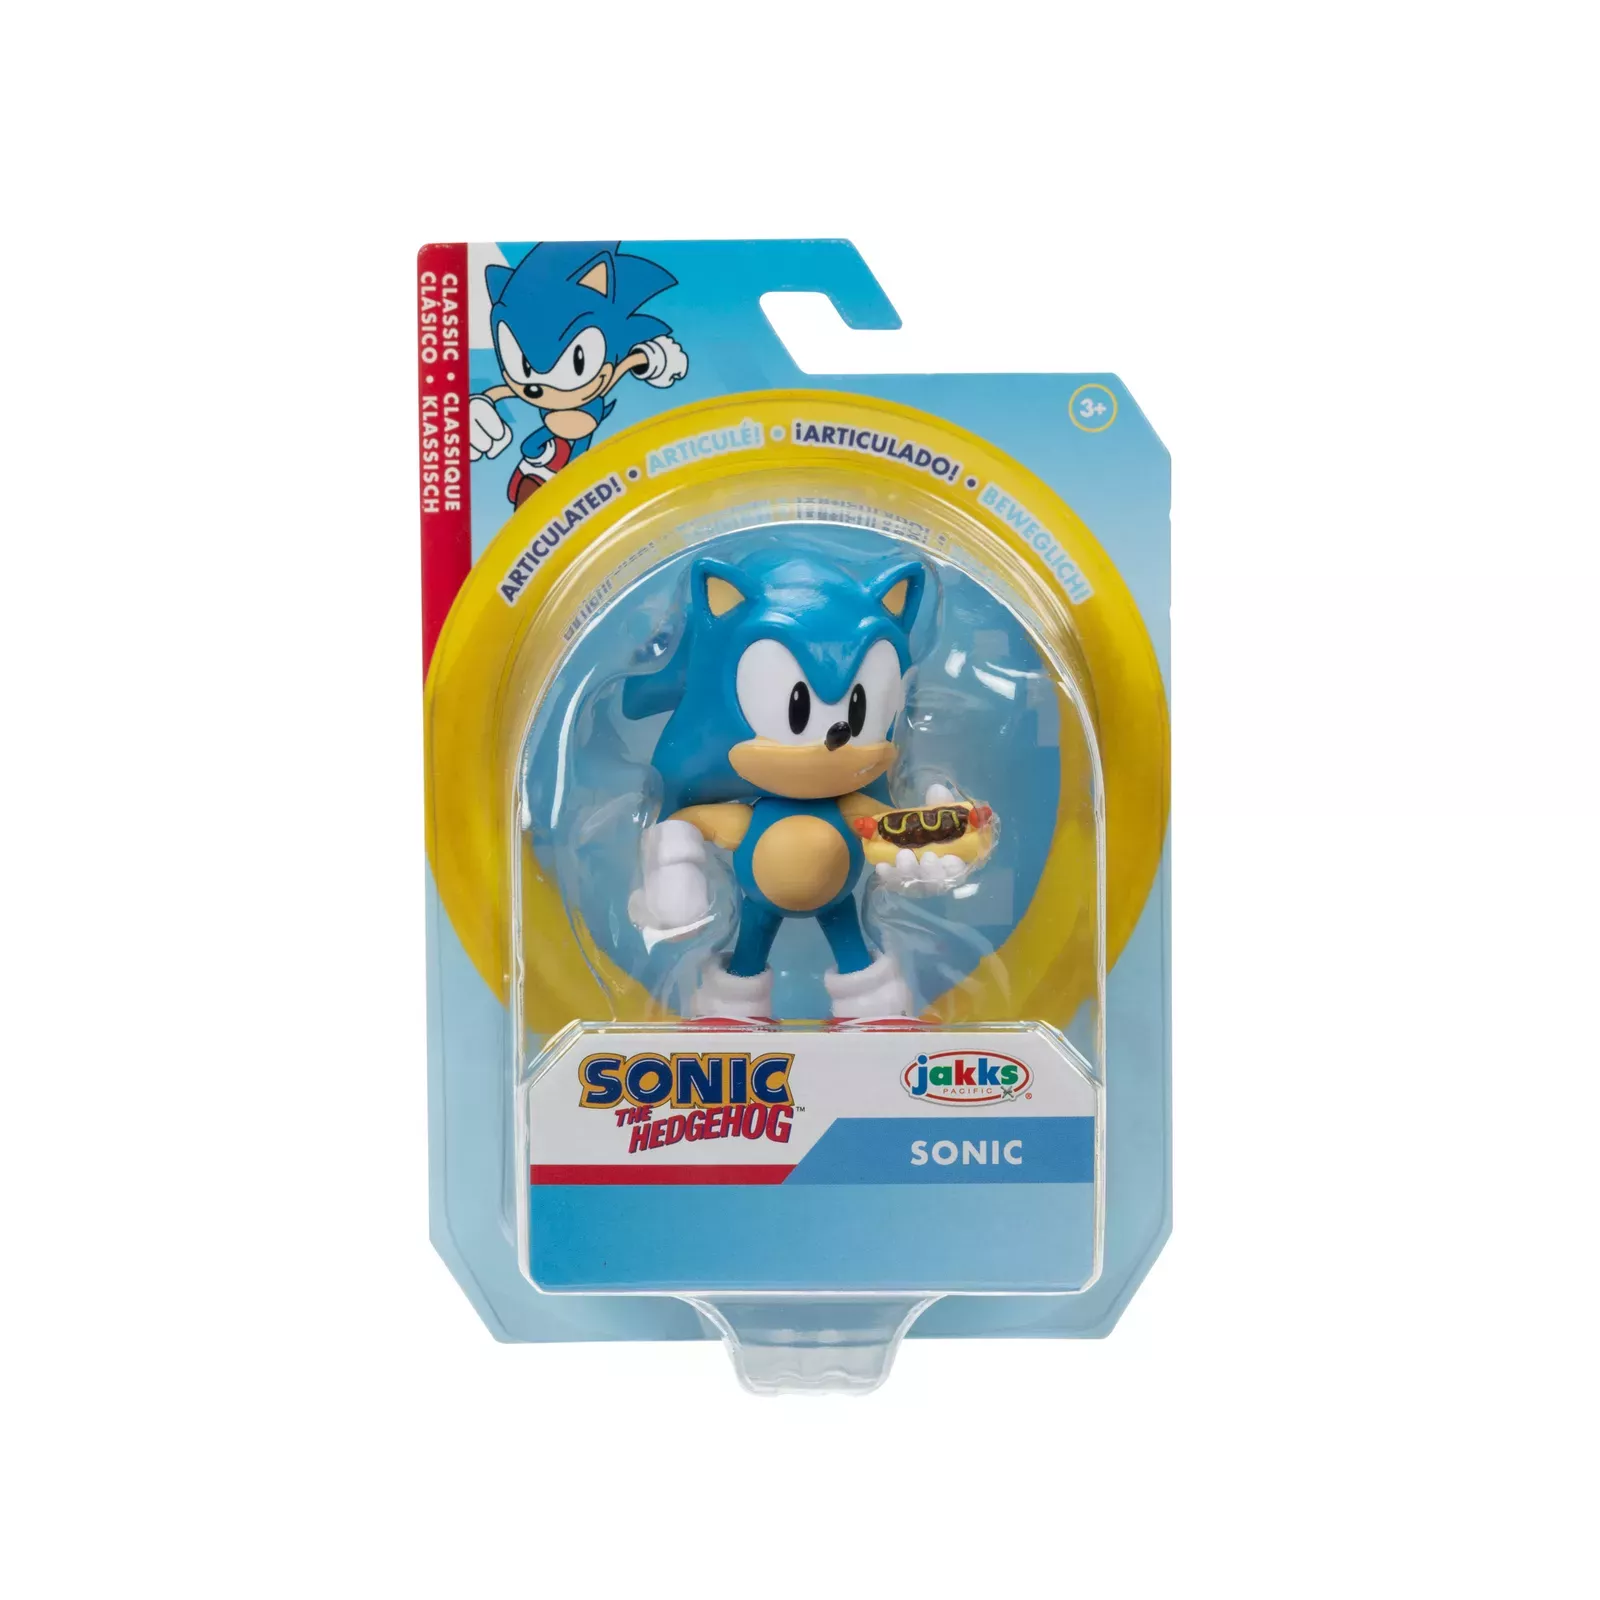 Mini Boneco Articulado Sonic The Hedgehog Amy 6 Cm